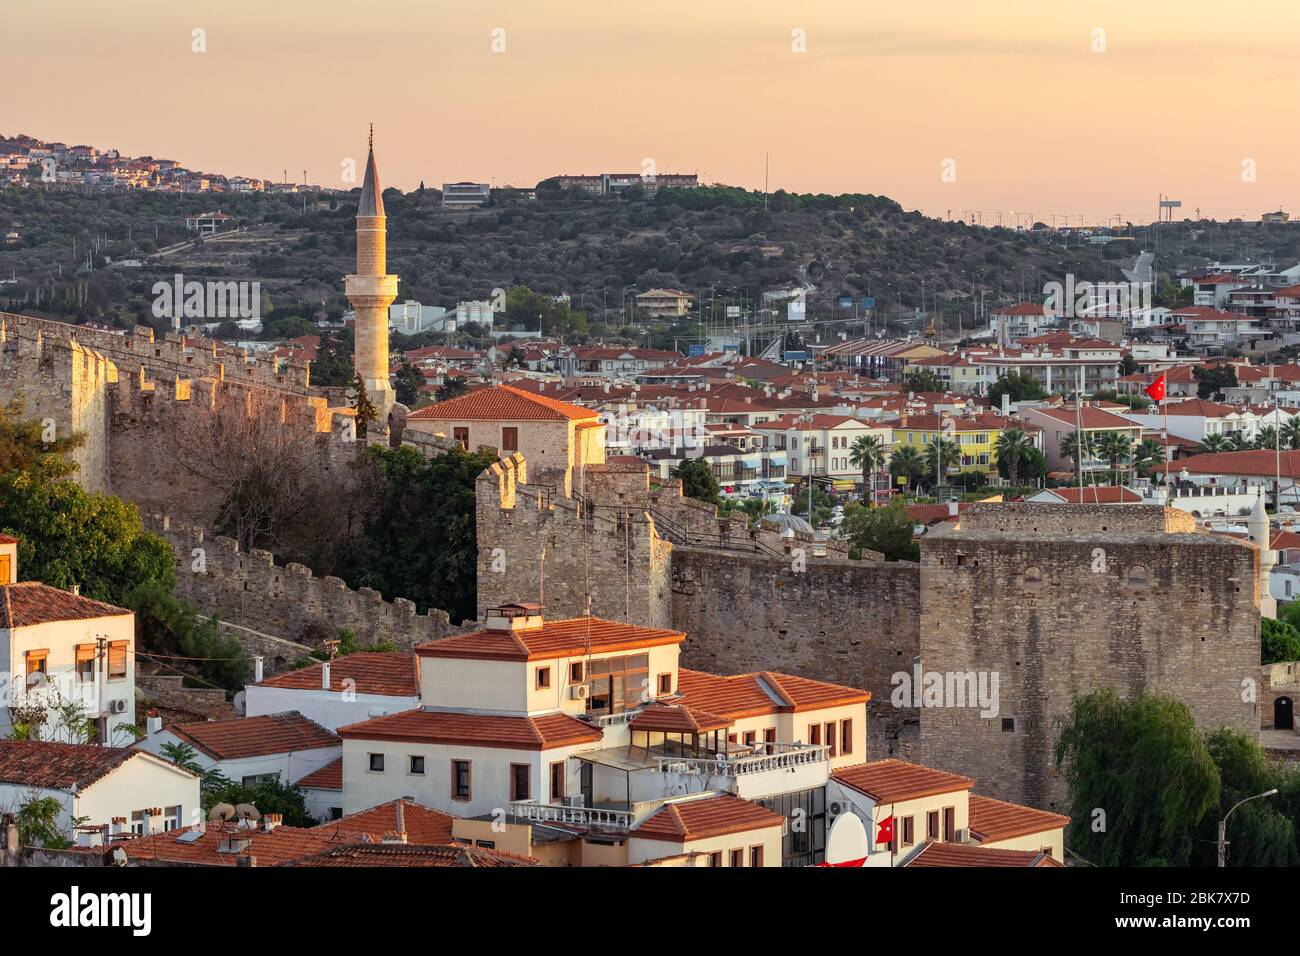 Cesme cityscape at Aegean sea coast, Turkey Stock Photo